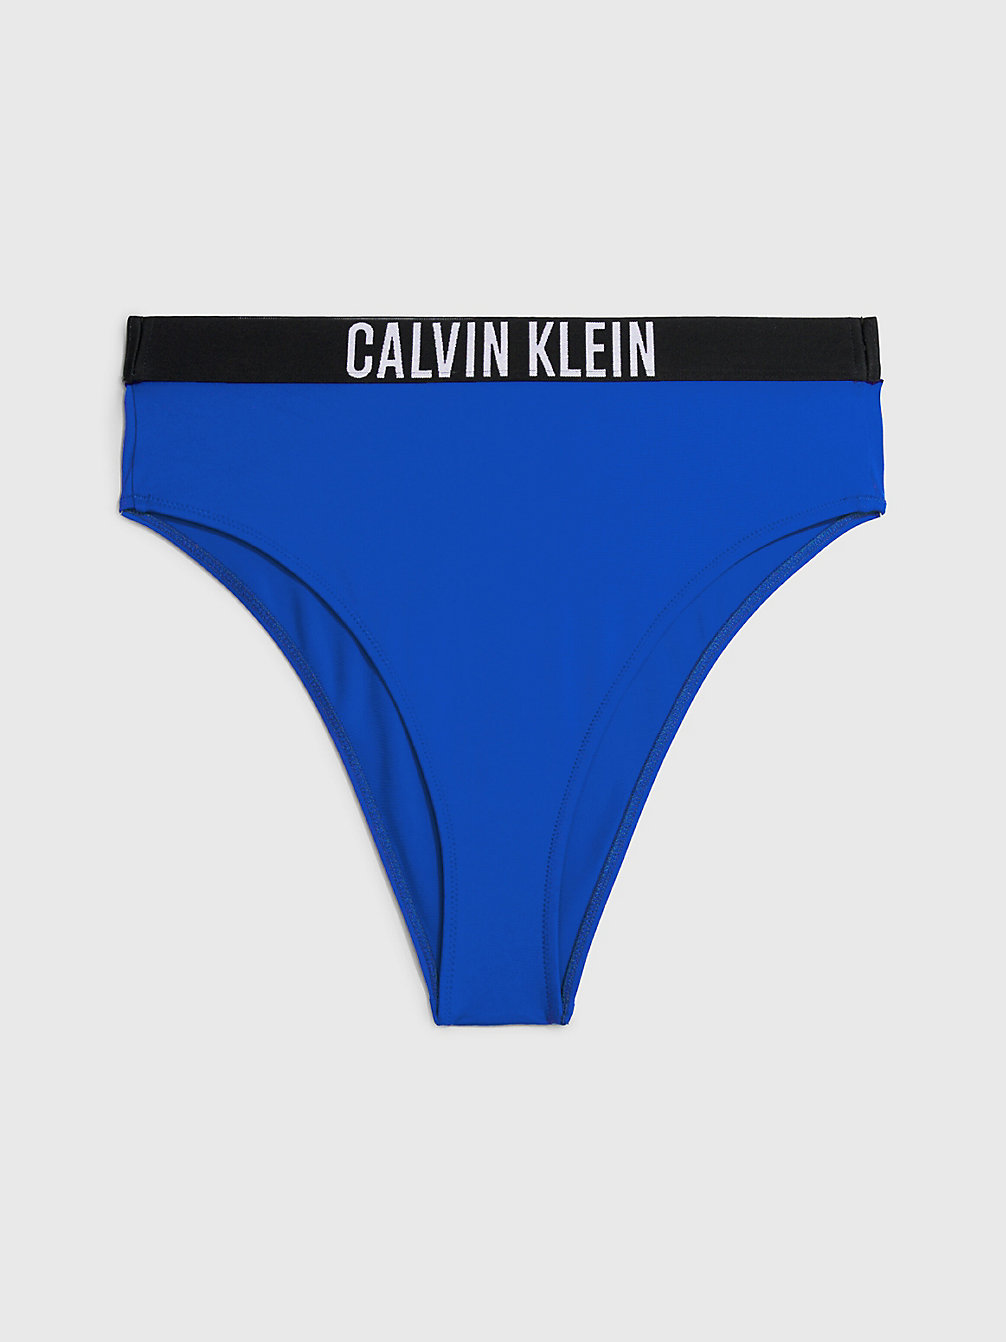 BISTRO BLUE > High Waist Bikinihosen - Intense Power > undefined Damen - Calvin Klein